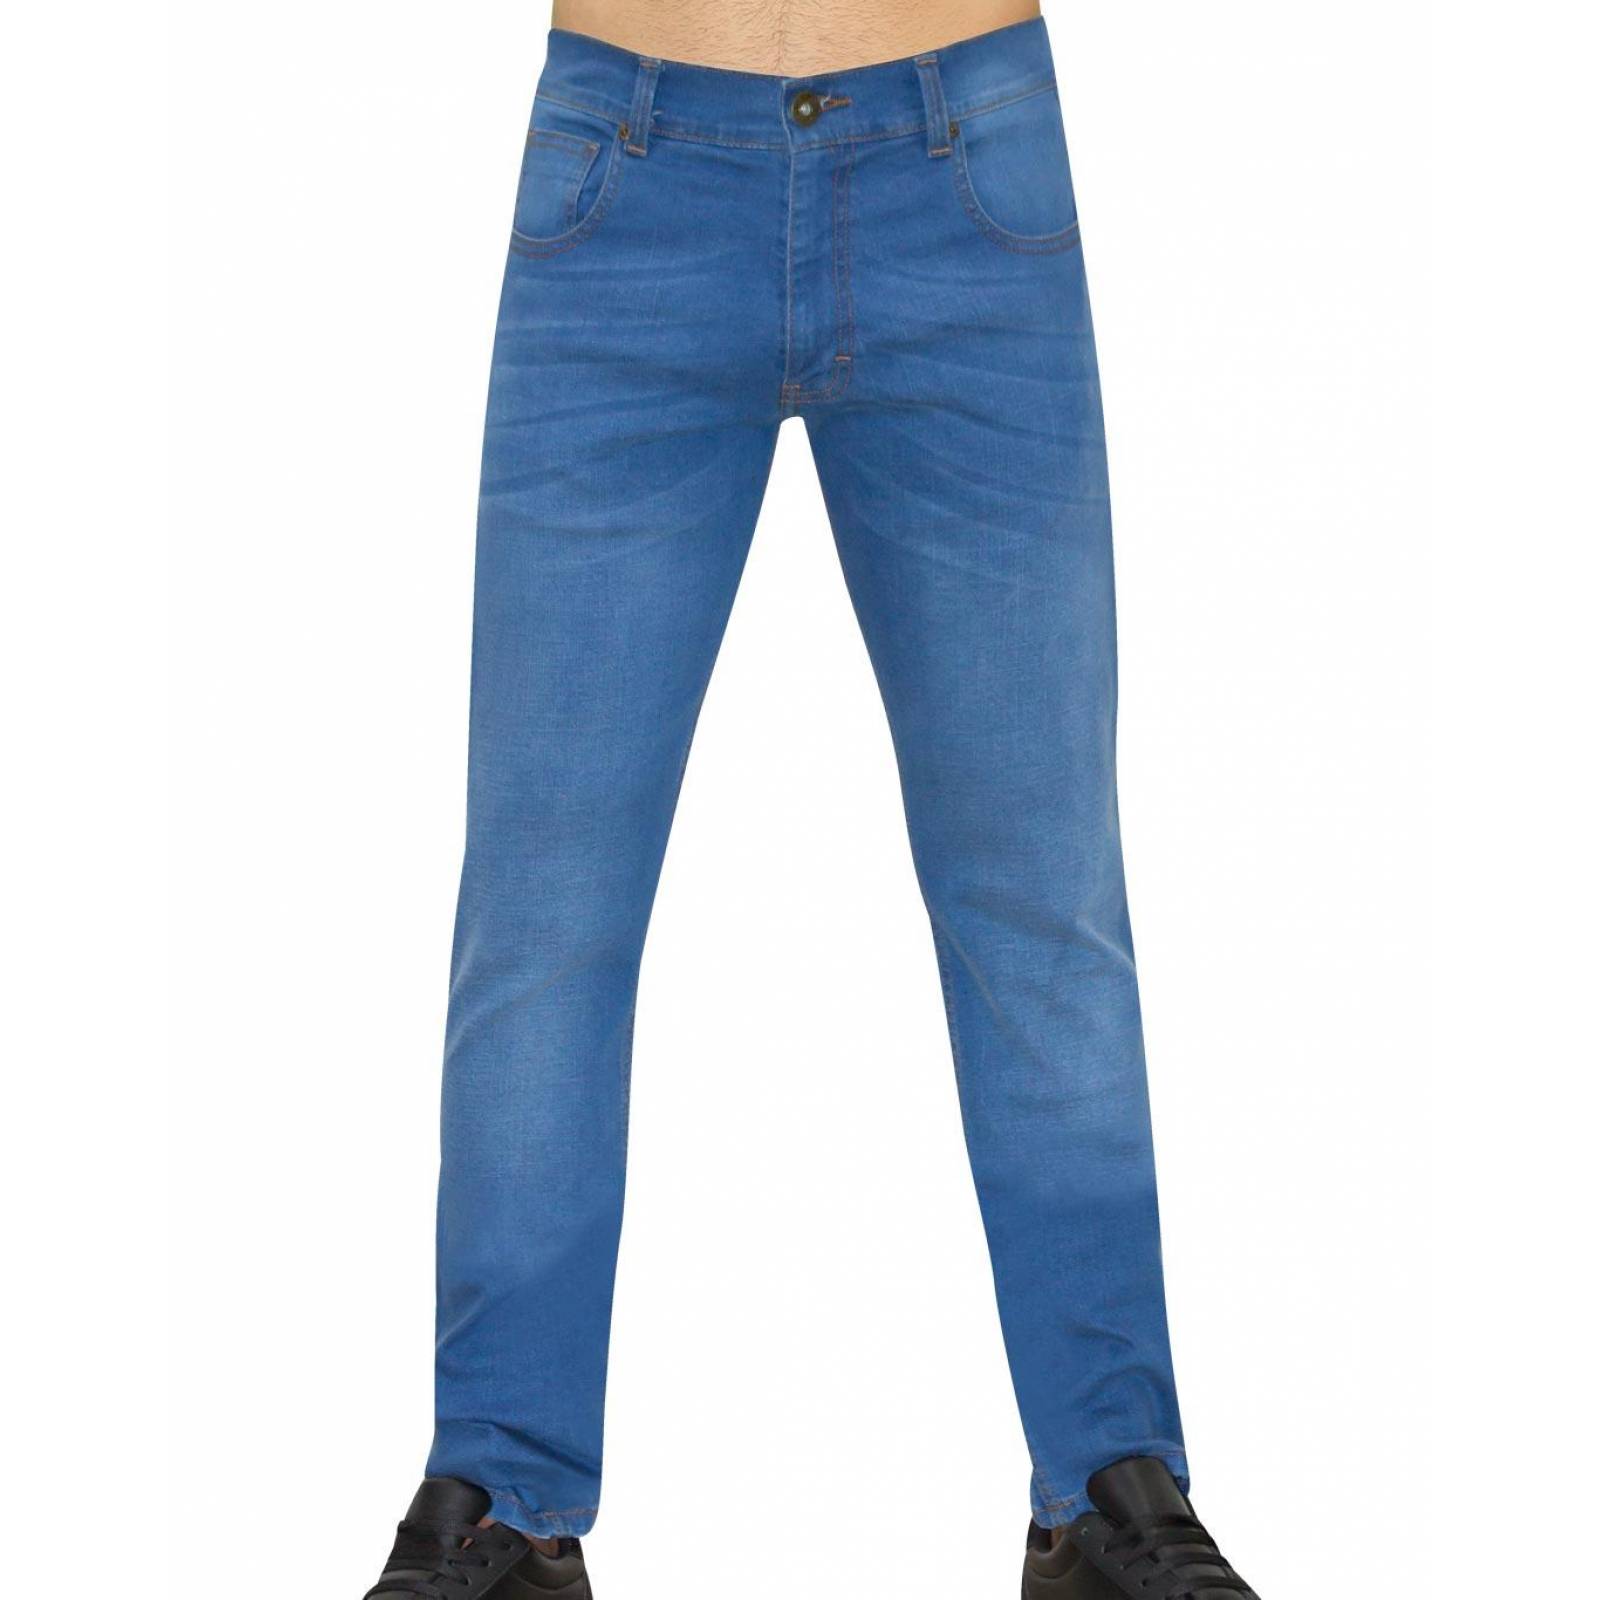 Jeans Básico Hombre Salvaje Tentación Stone 63103405 Mezclilla Stretch 